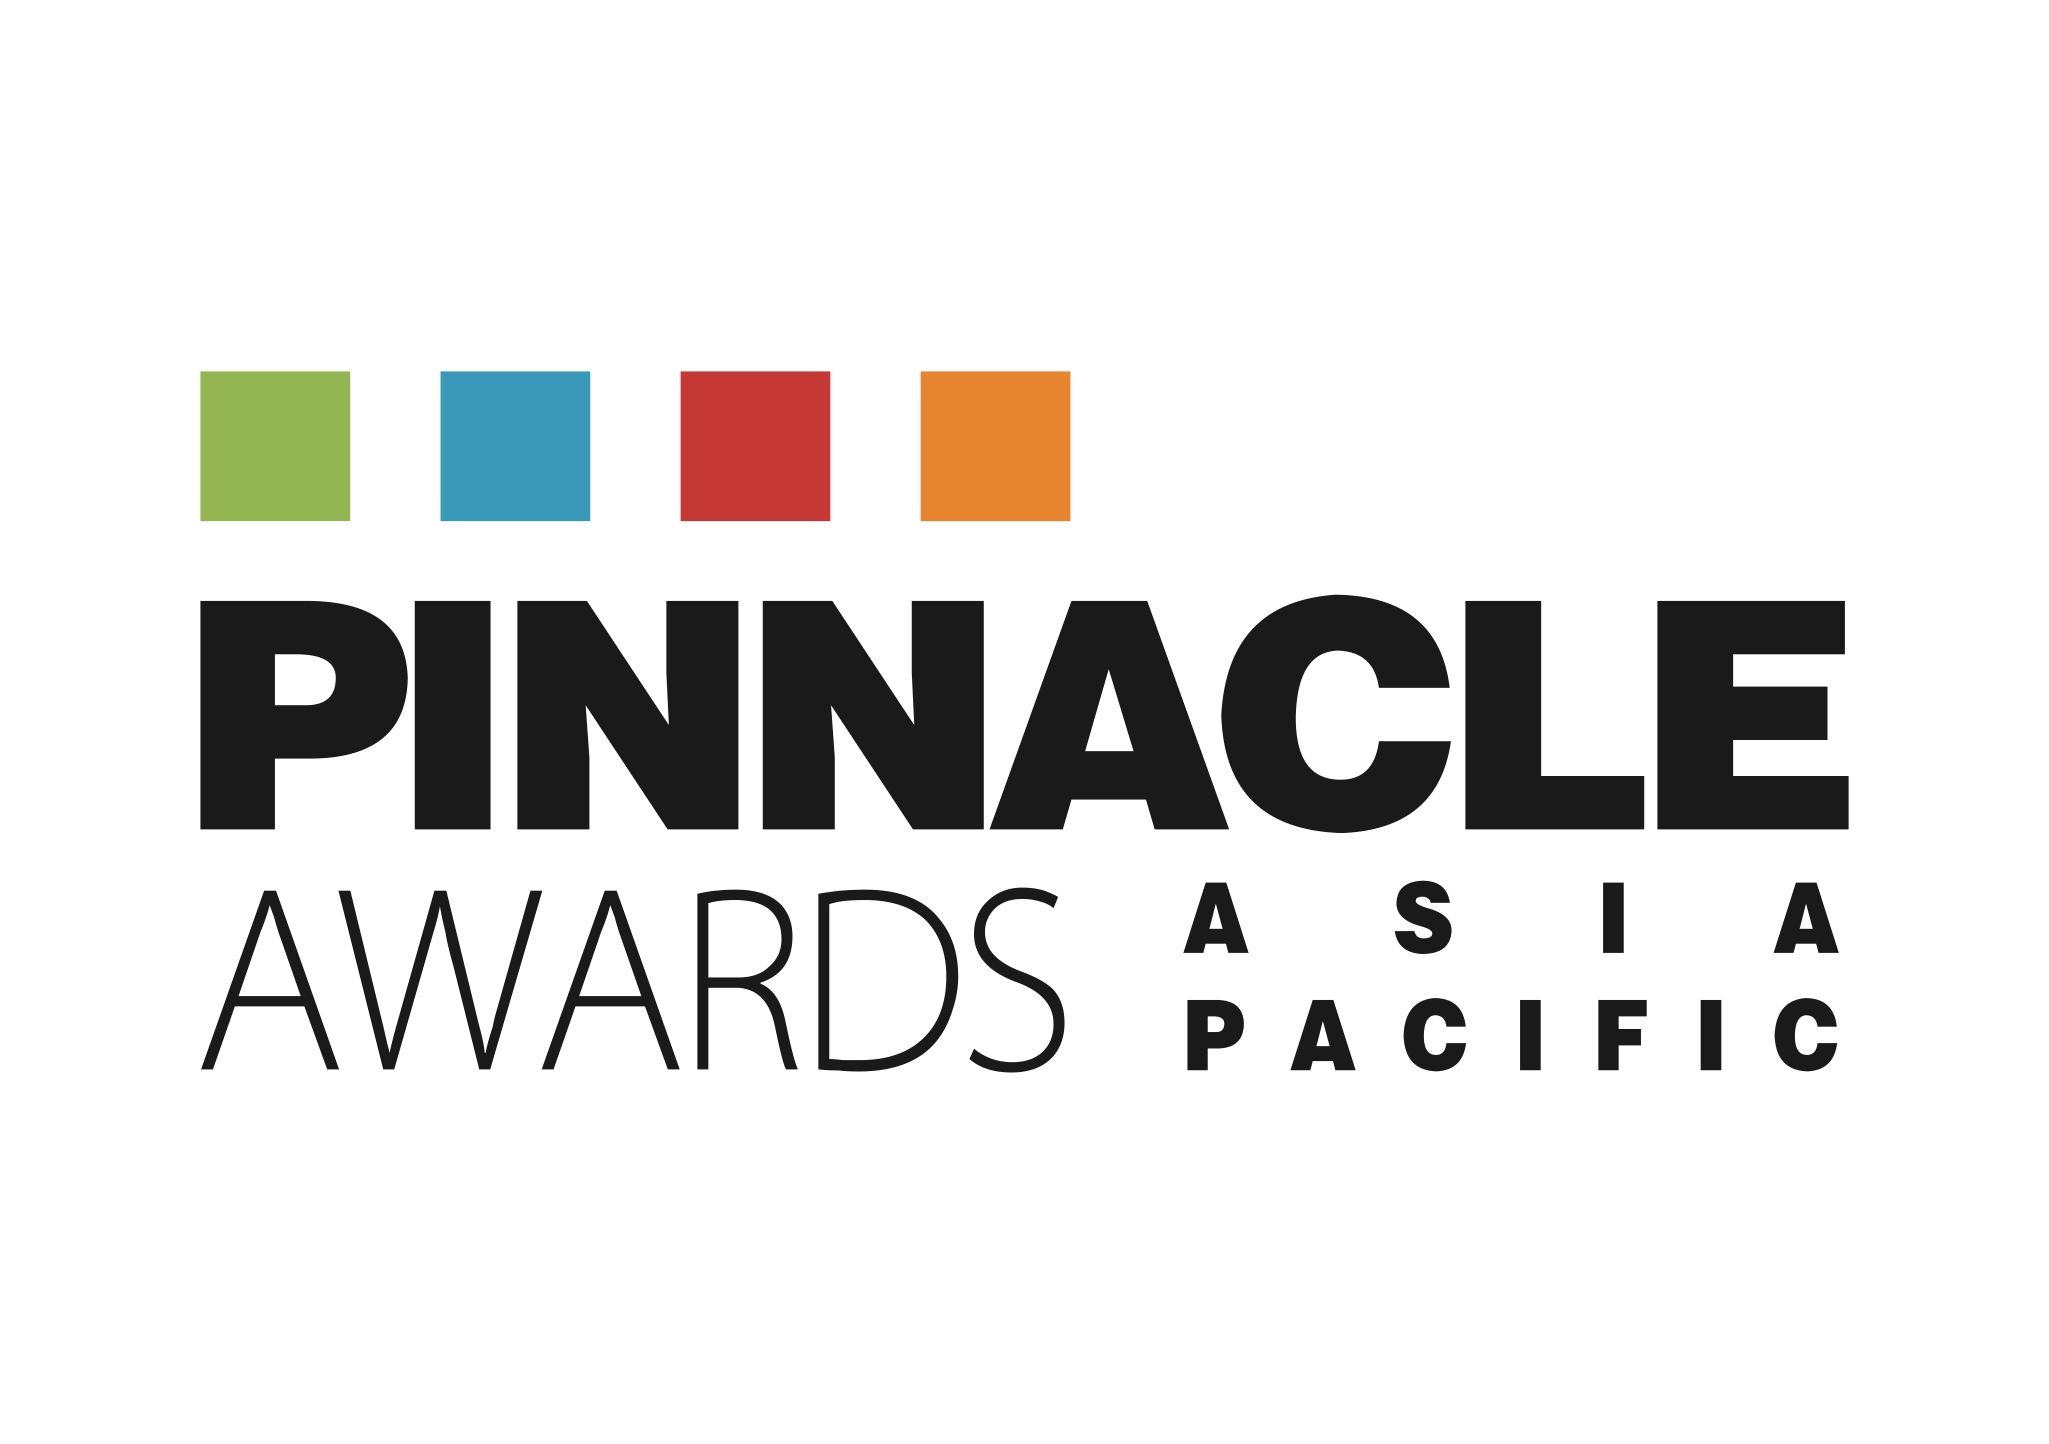 logo du pinnacle Award - Récompense prestigieuse - mobilier exterieur outdoor Higold Luxe